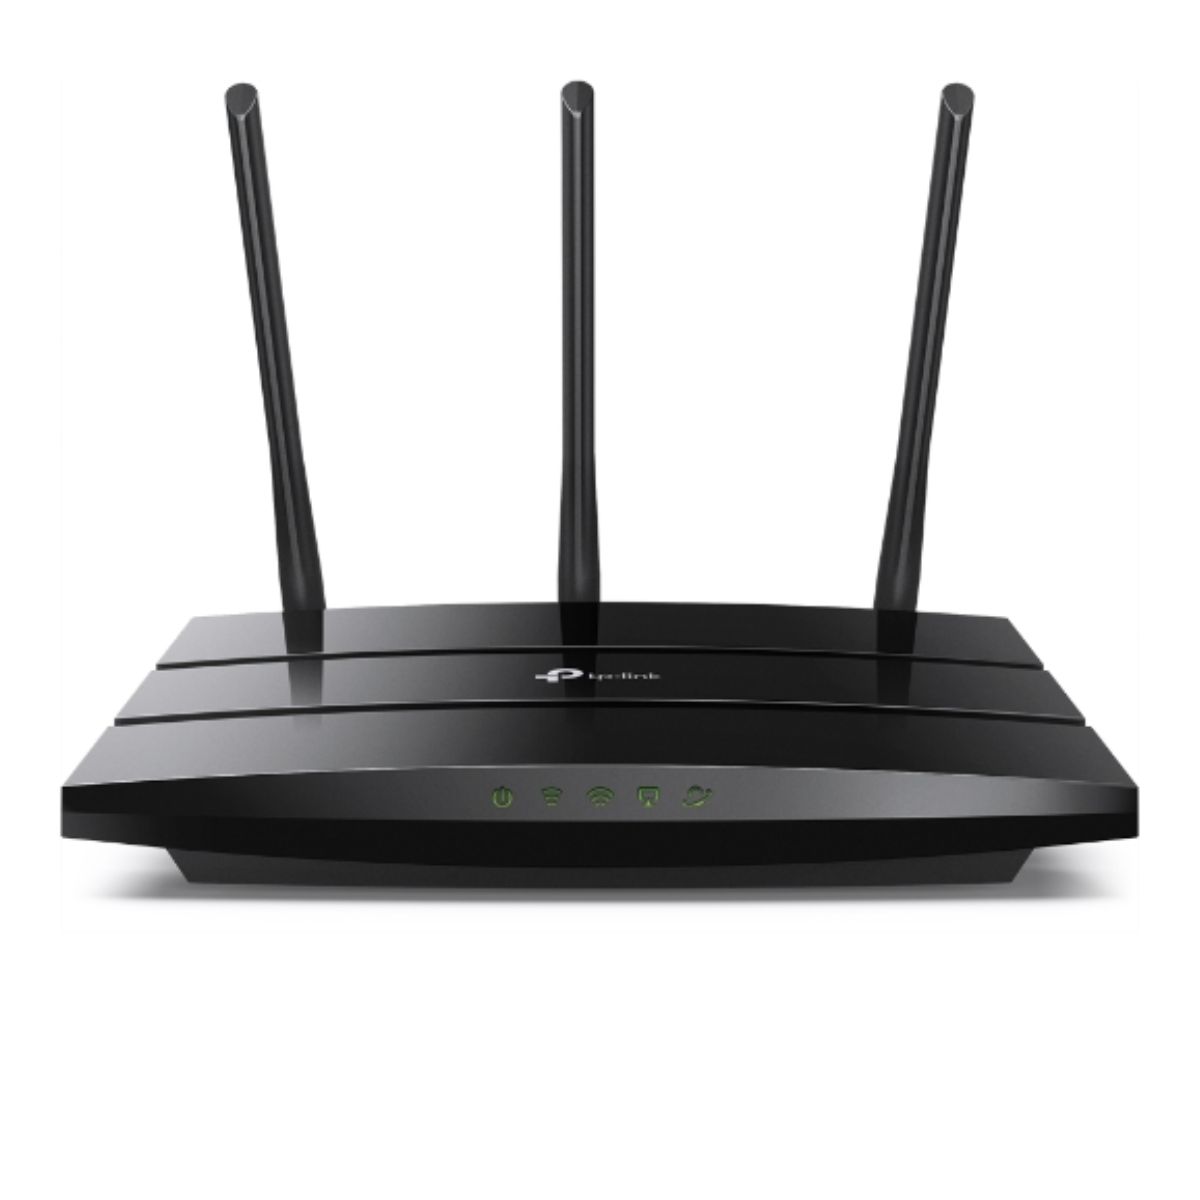 Router wifi băng tần kép TP-Link Archer A8 1300 Mbps trên 5 GHz và 600 Mbps trên 2.4 GHz